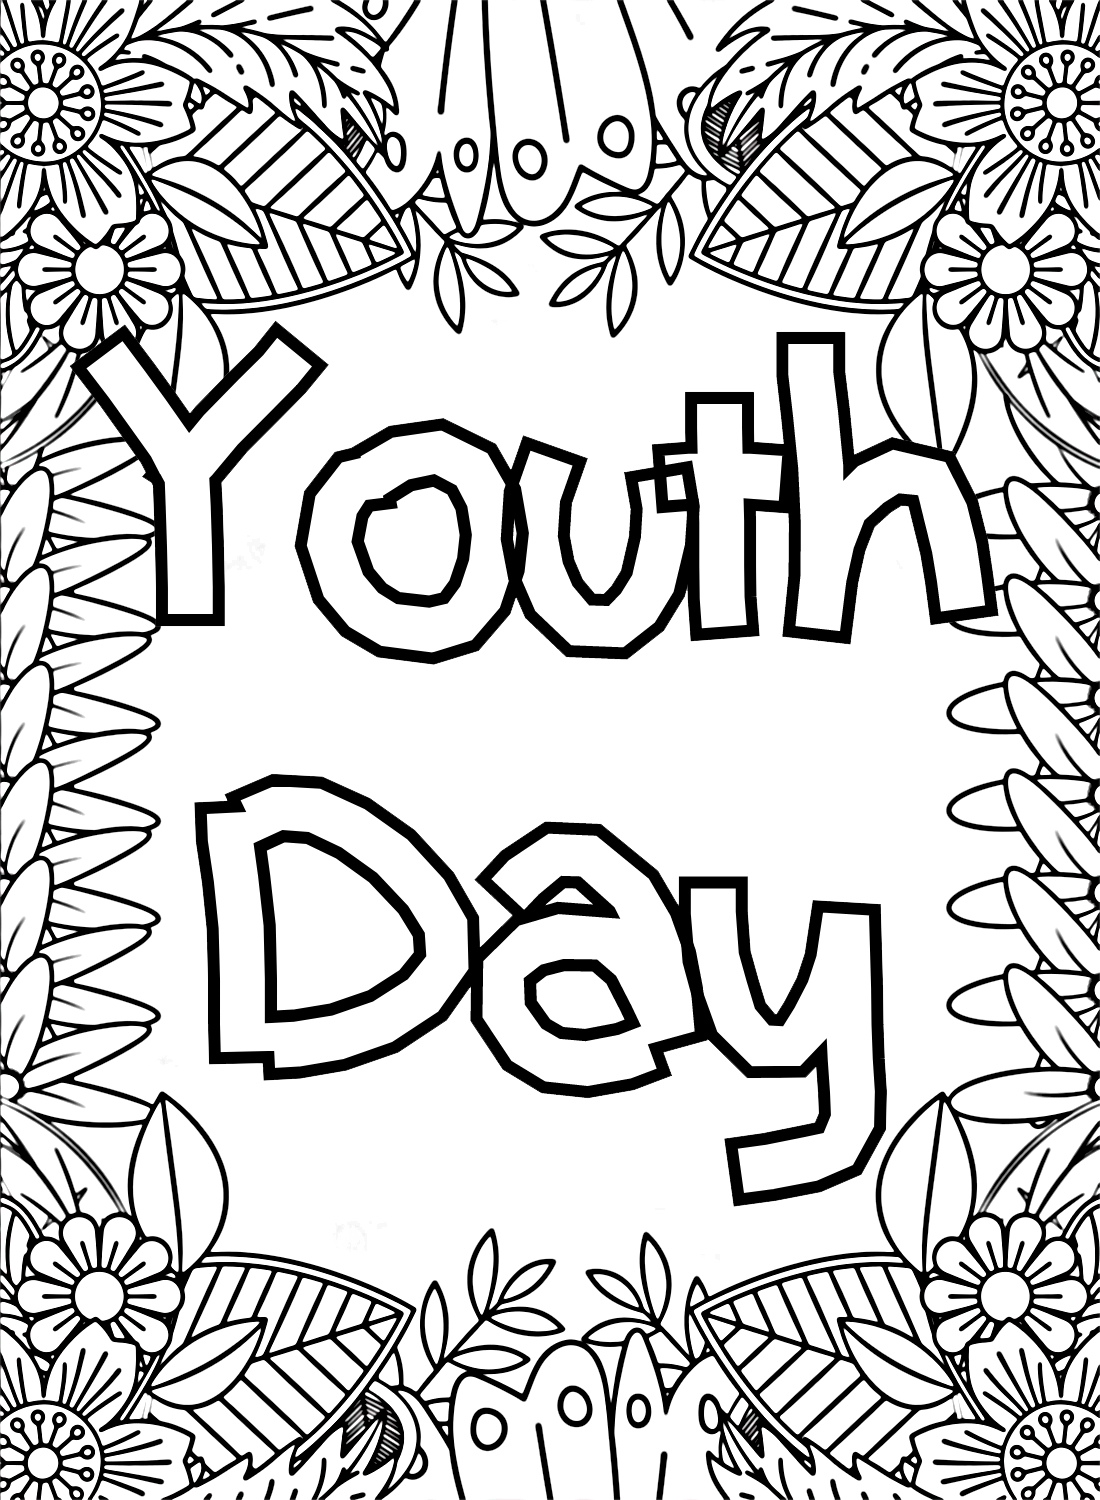 Immagine della Giornata Internazionale della Gioventù da colorare dalla Giornata Internazionale della Gioventù